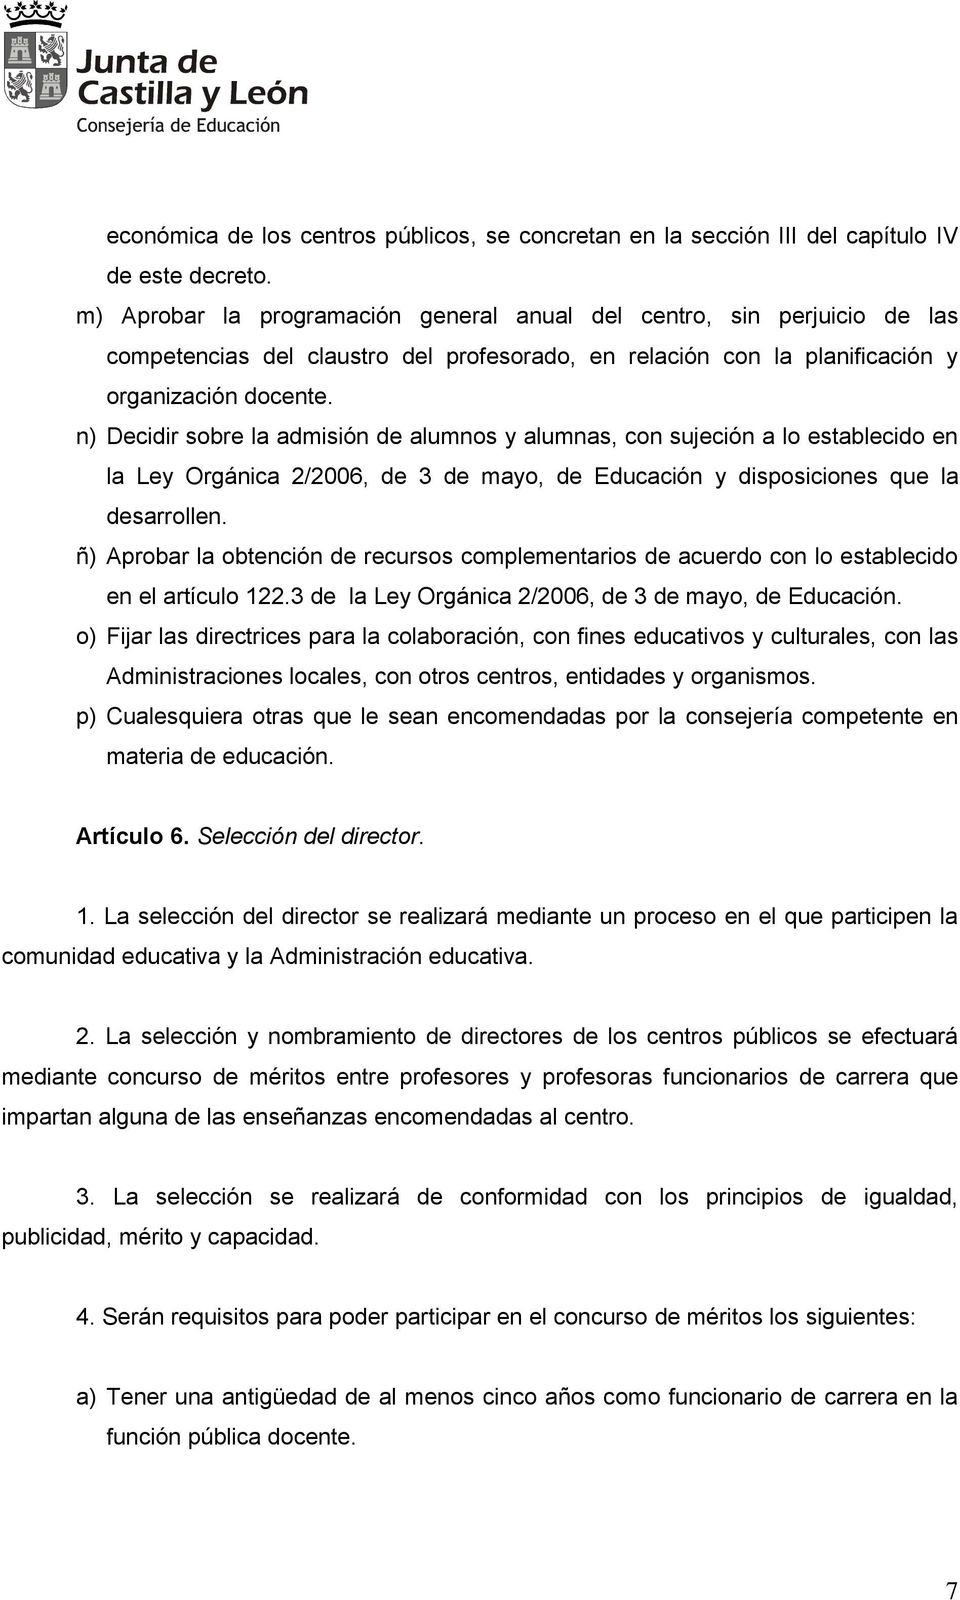 n) Decidir sobre la admisión de alumnos y alumnas, con sujeción a lo establecido en la Ley Orgánica 2/2006, de 3 de mayo, de Educación y disposiciones que la desarrollen.